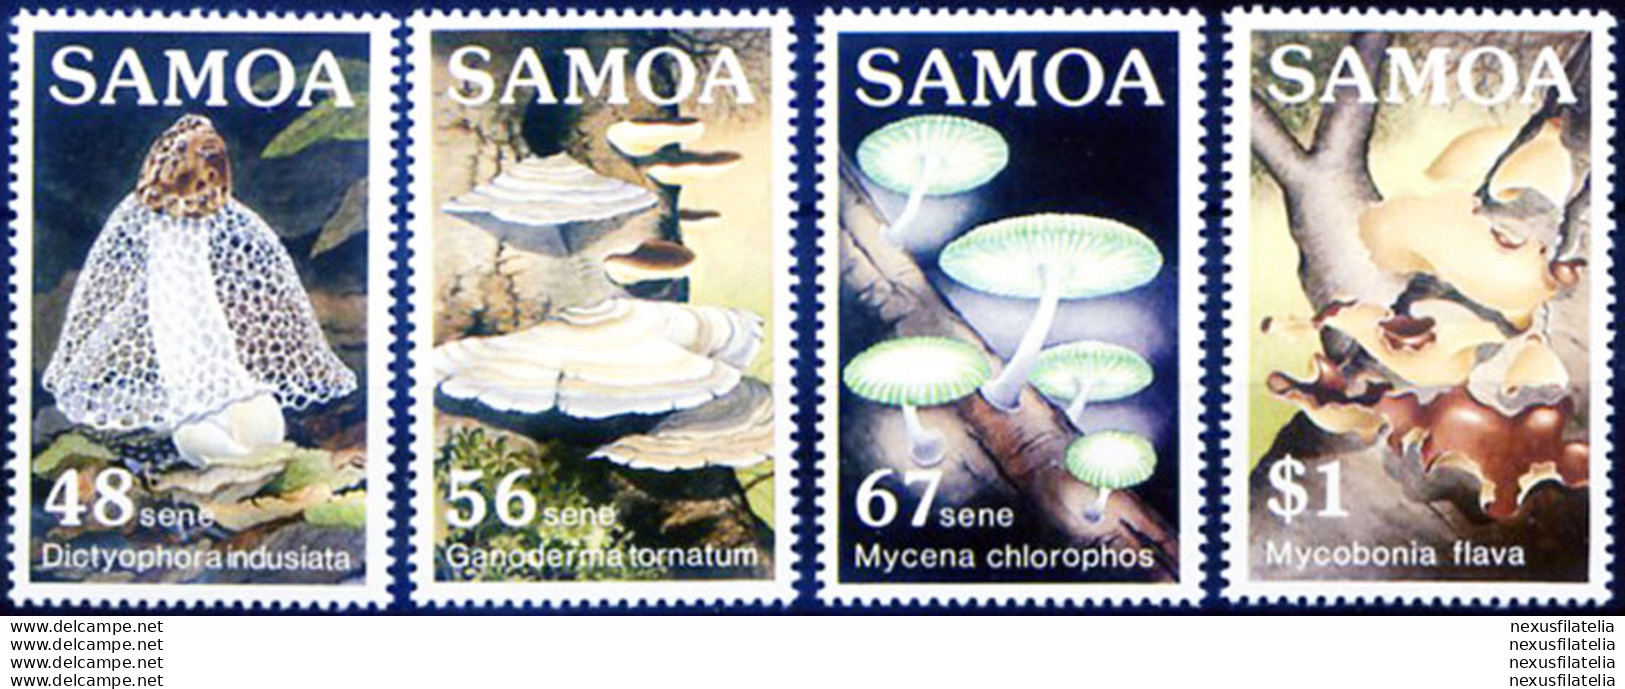 Funghi 1985. - Samoa